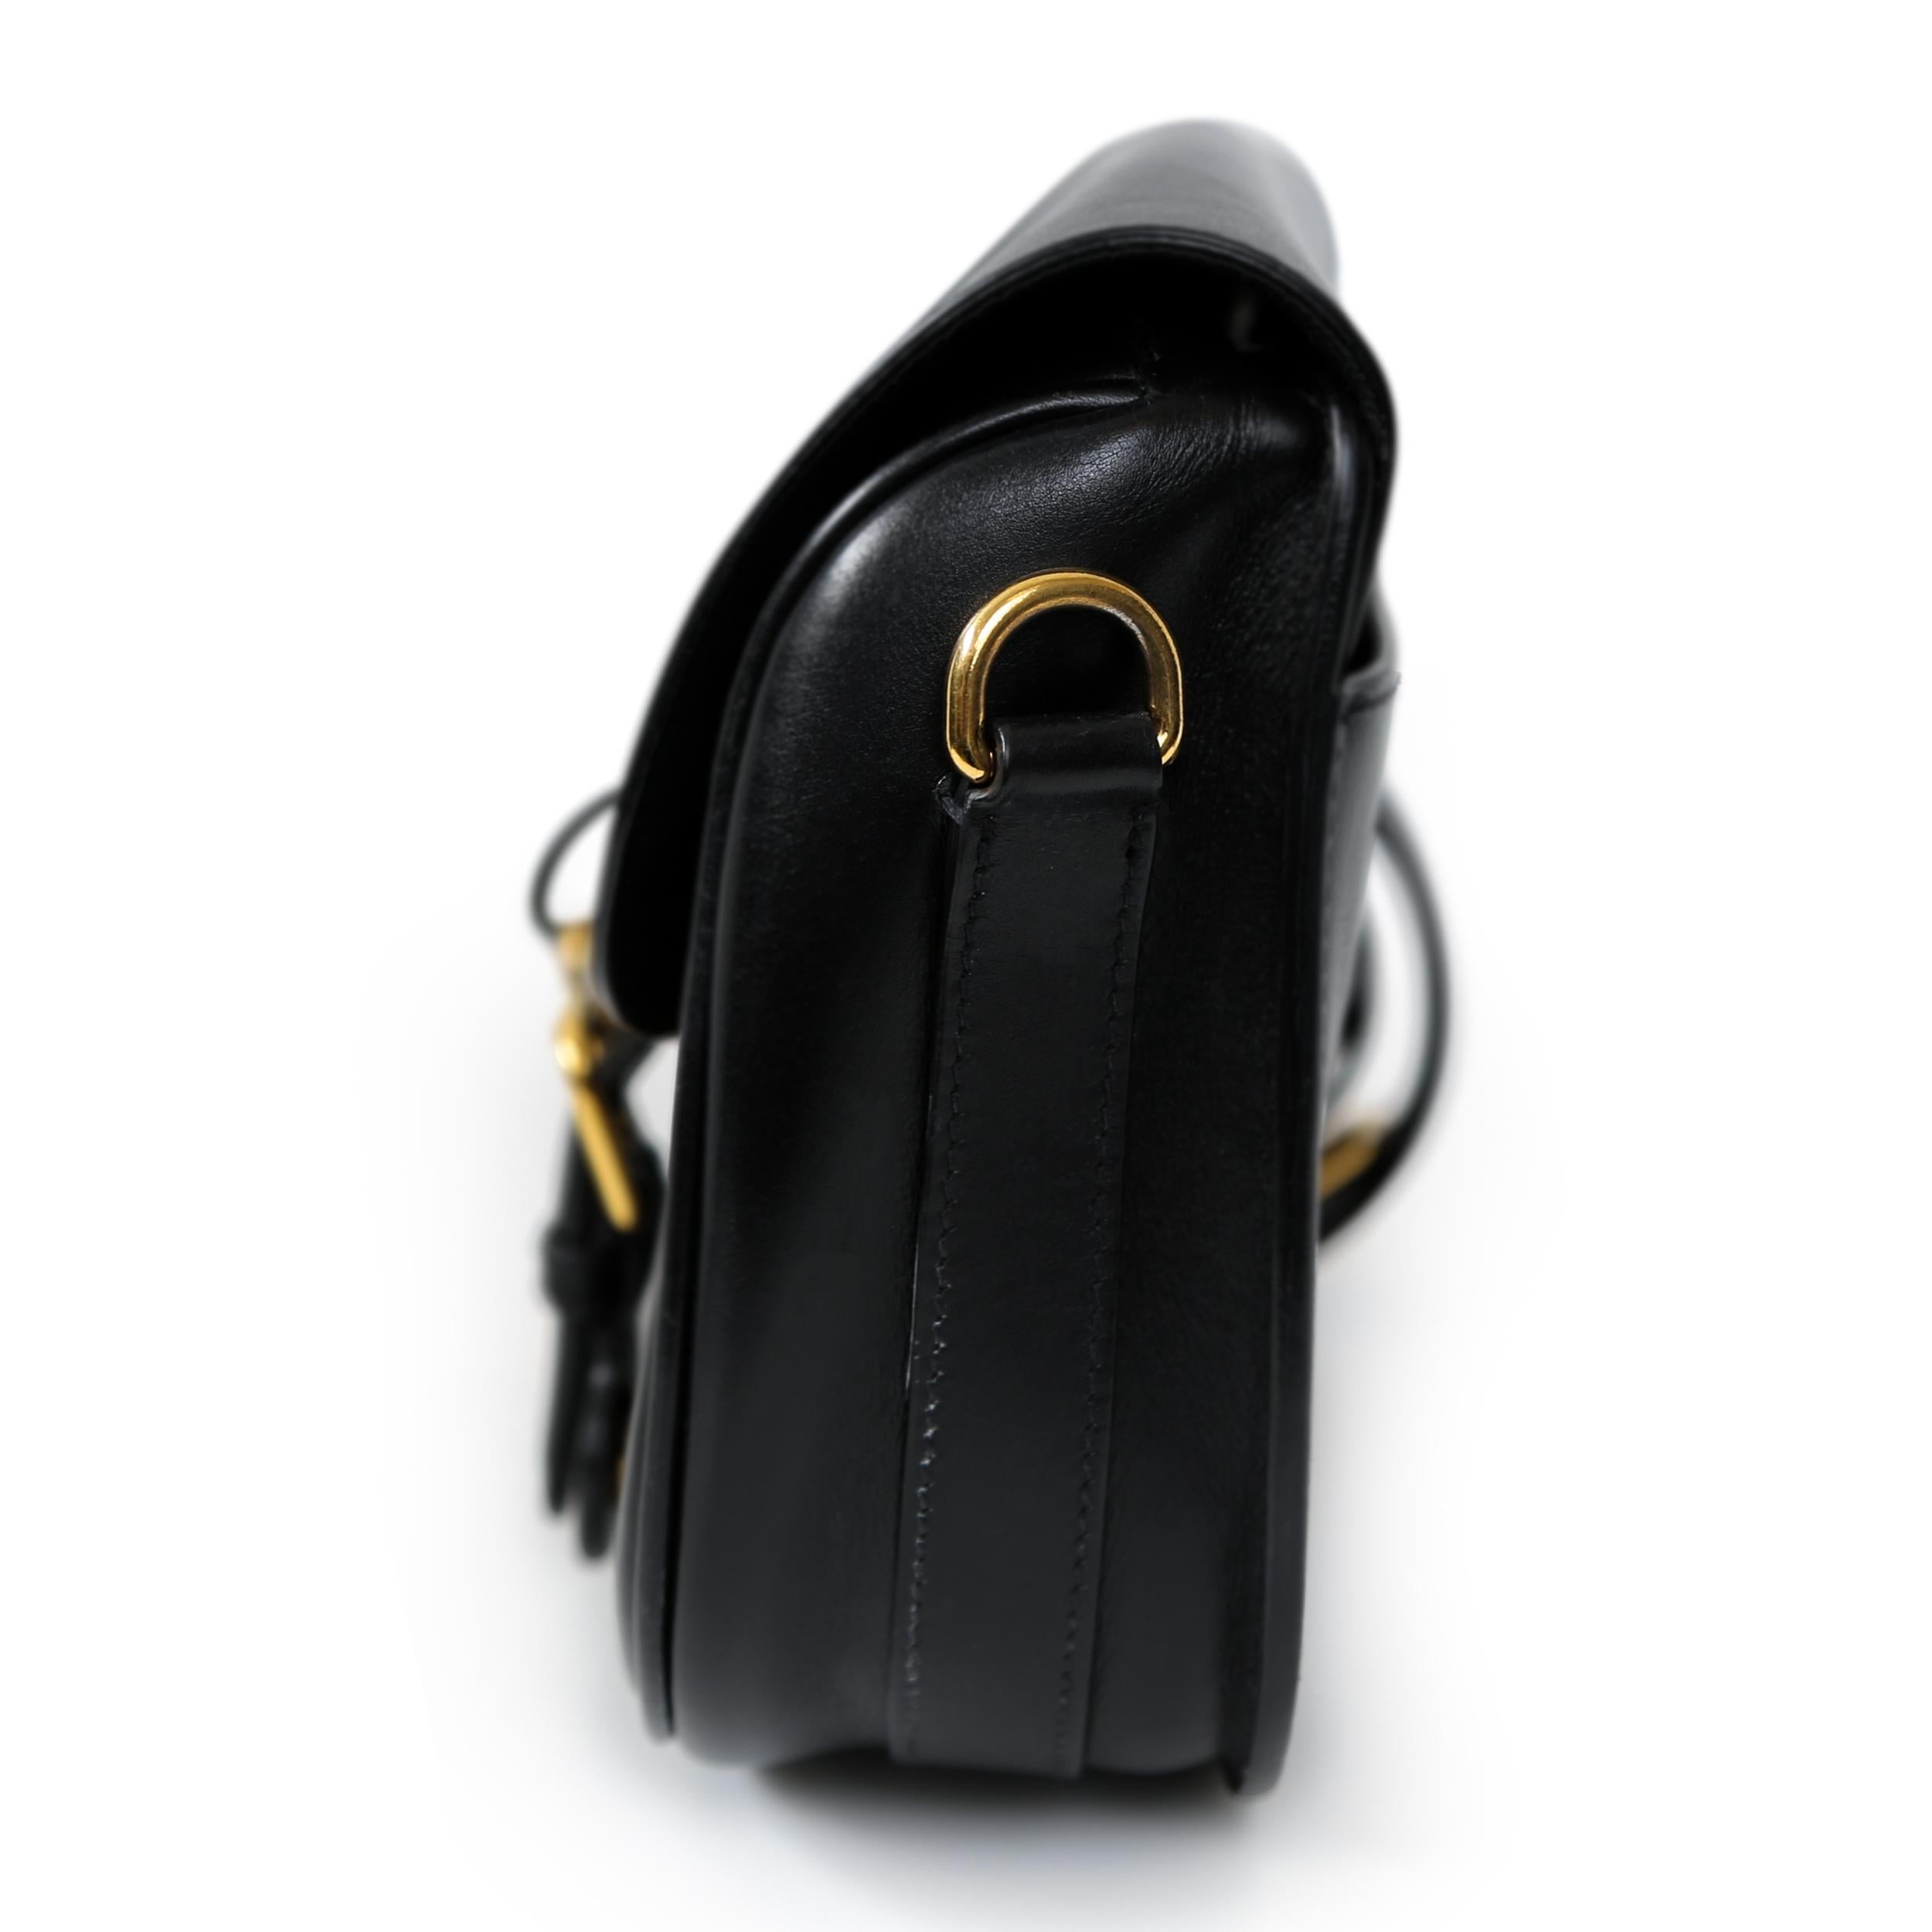 Die mittelgroße Tasche Bobby von Dior ist aus glattem schwarzem Leder gefertigt und strahlt raffinierte Eleganz aus. Diese Tasche ist perfekt für jede Gelegenheit und hat ein schickes und minimalistisches Design. Trotz kleiner Kratzer auf der